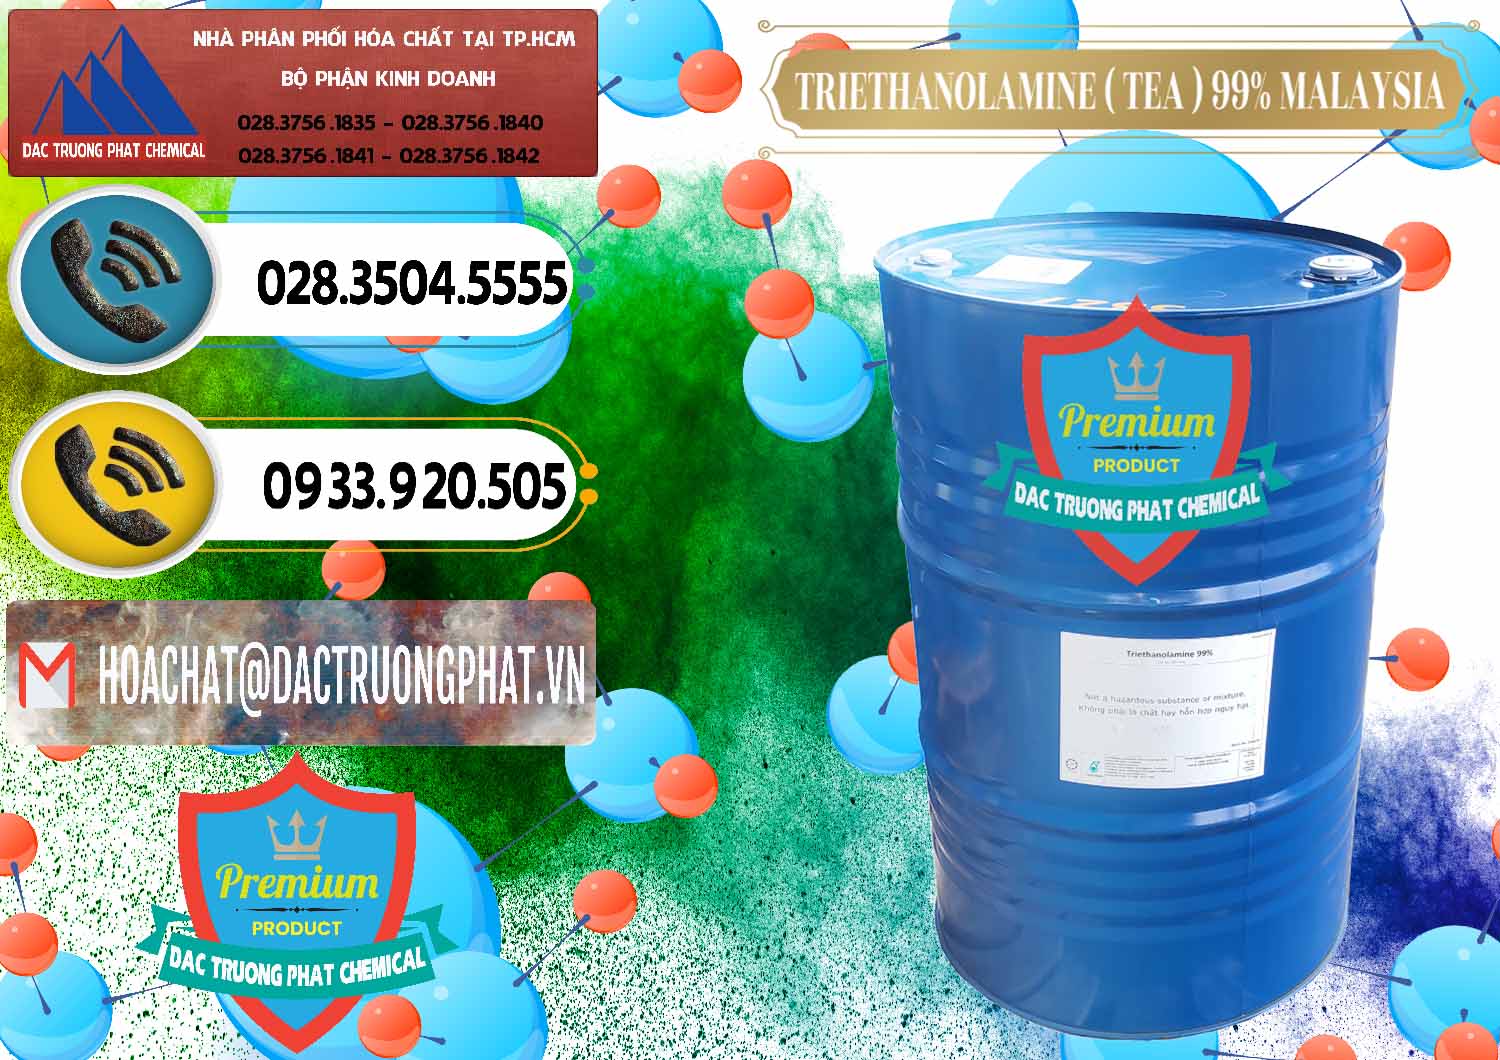 Nơi chuyên nhập khẩu - bán TEA - Triethanolamine 99% Mã Lai Malaysia - 0323 - Cty chuyên phân phối & cung ứng hóa chất tại TP.HCM - hoachatdetnhuom.vn